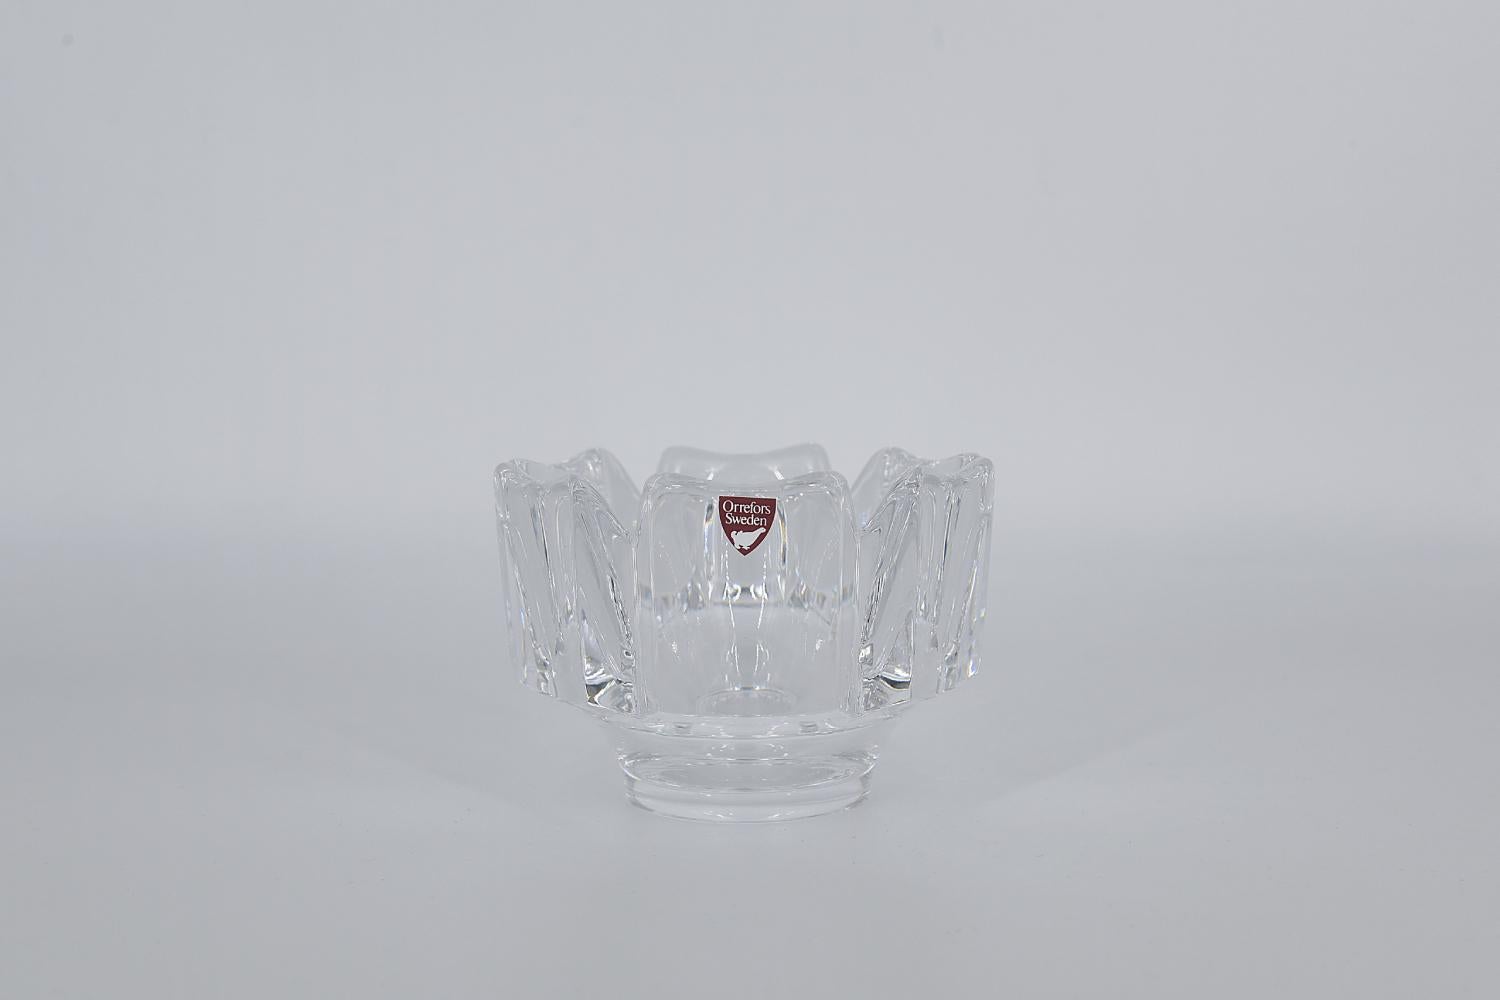 Ce bol Corona en cristal a été conçu par Lars Hellsten pour la verrerie suédoise Orrefors dans les années 1970. En cristal artistique de haute qualité, en forme de couronne hexagonale posée sur une base ronde.

Lars Hellsten a étudié la sculpture